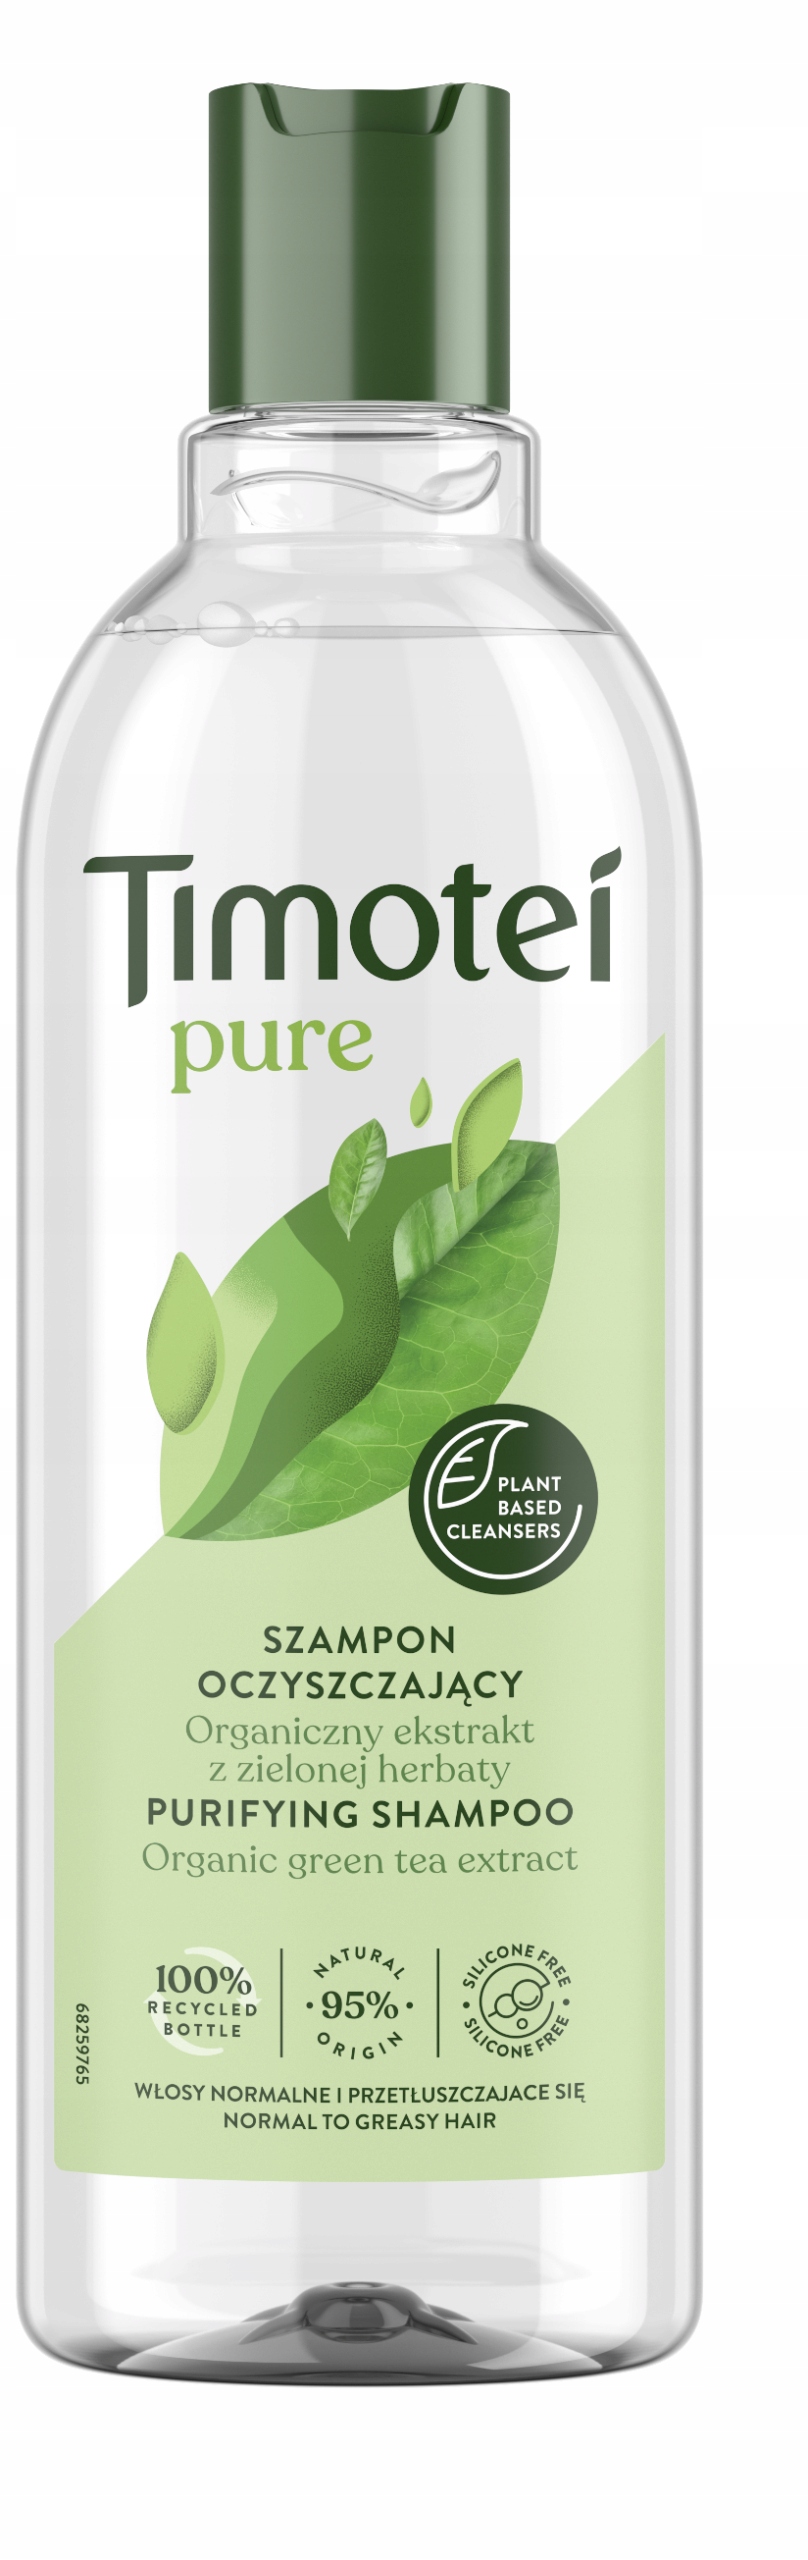 timotei szampon z wyciagiem z zielonej herbaty